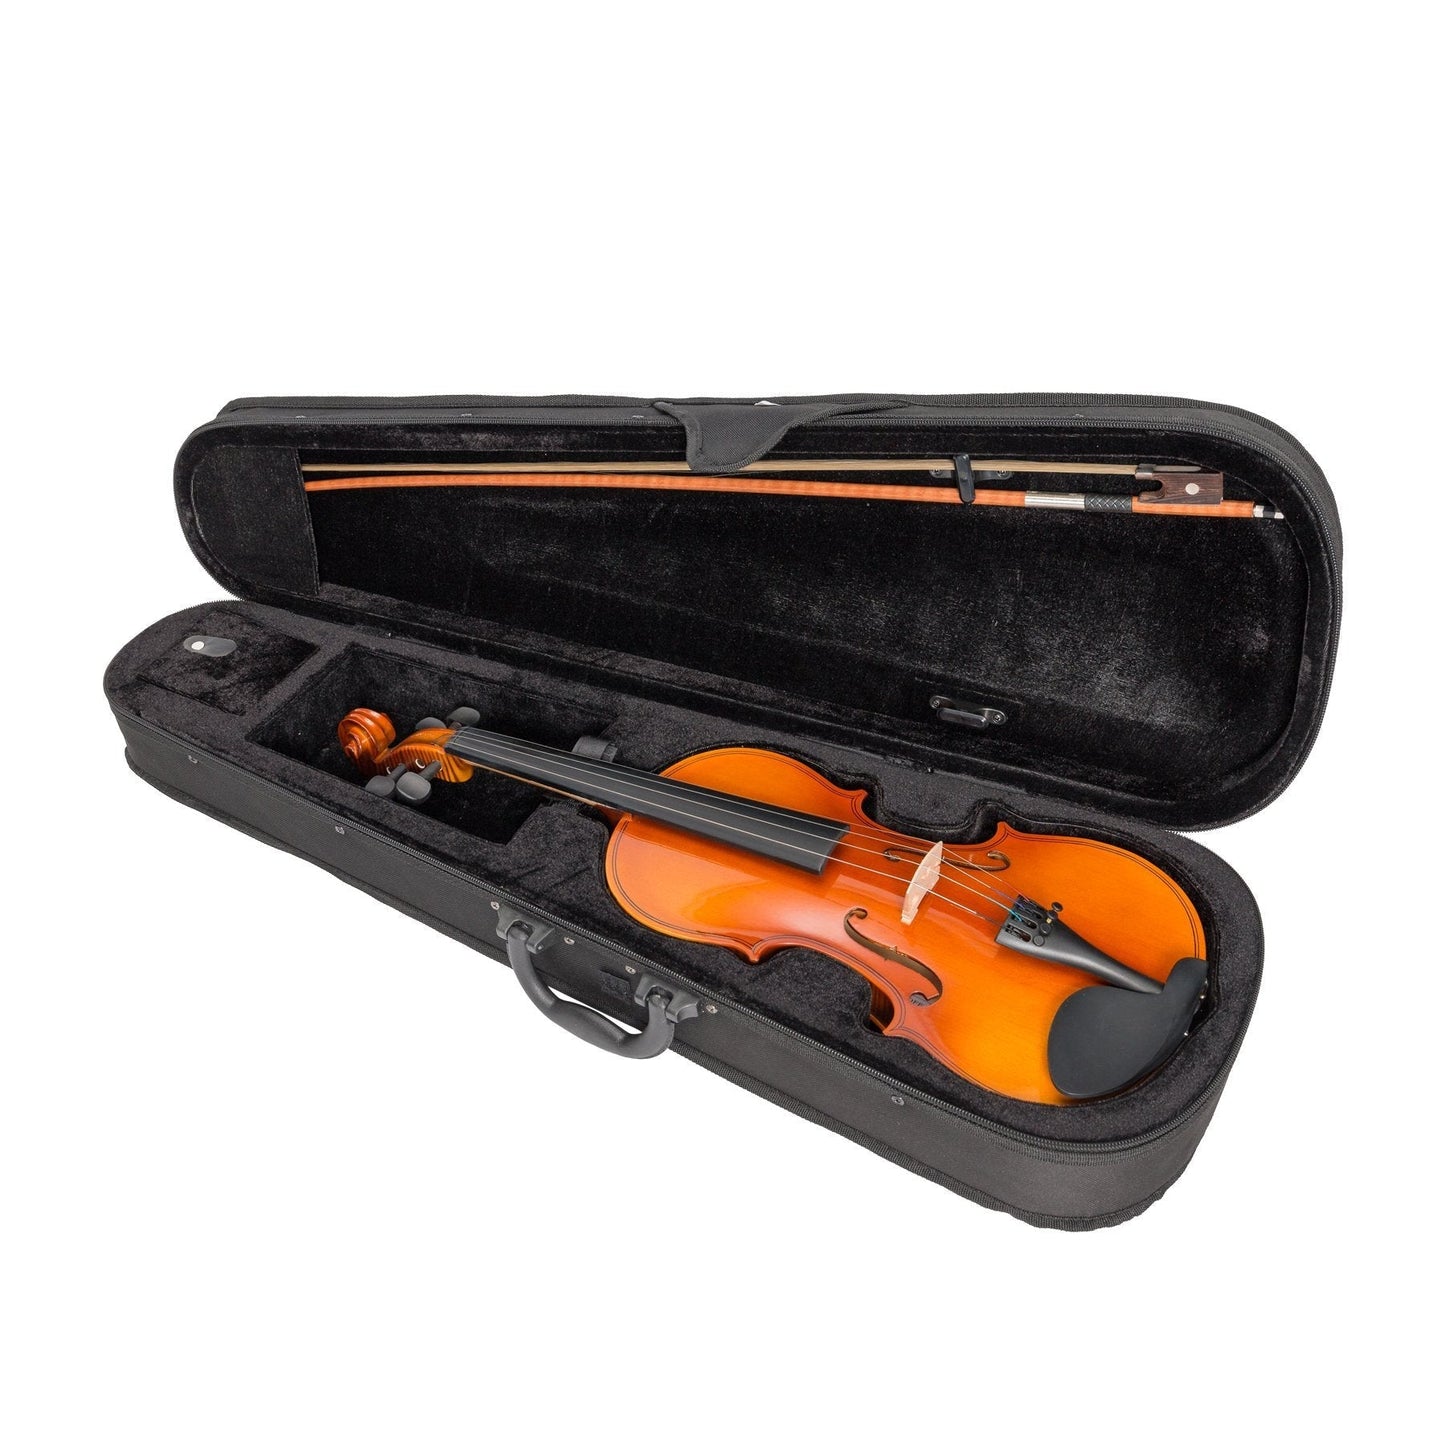 Steinhoff Full Size Student Violin Set (Natural Gloss)